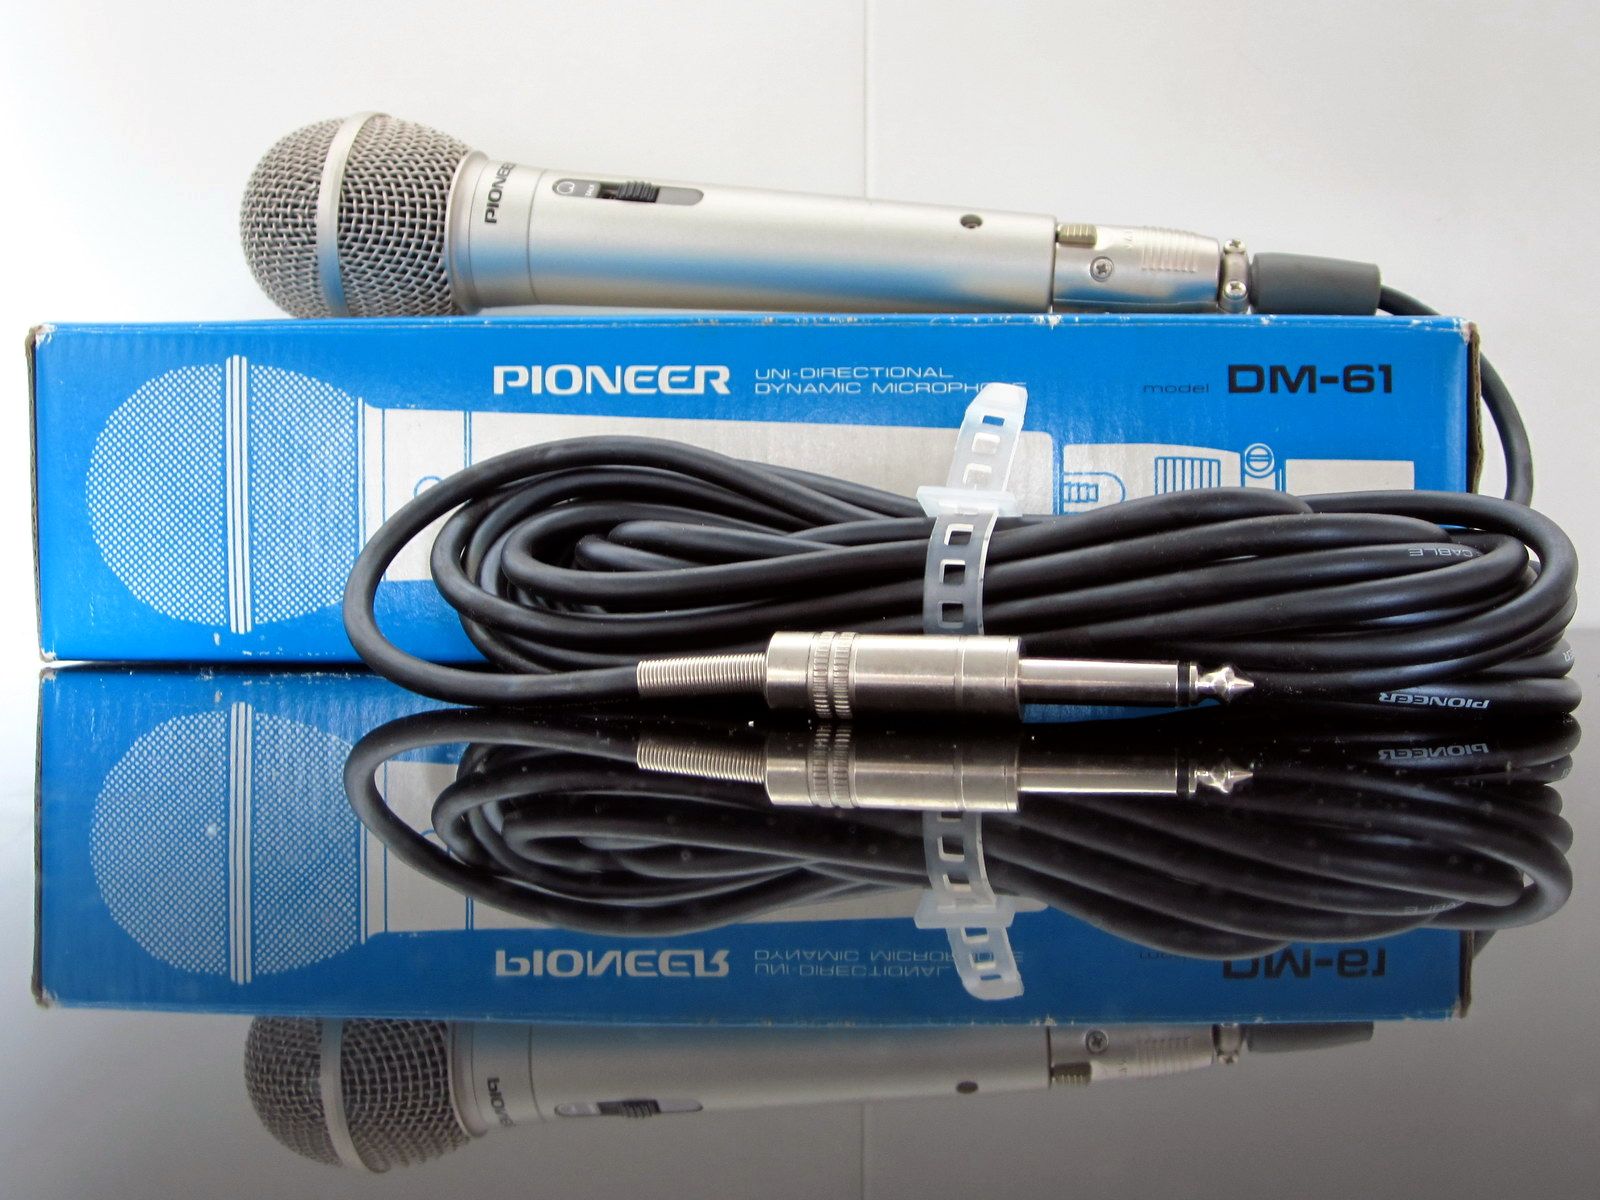 Pioneer DM-61 Dynamic Microphone